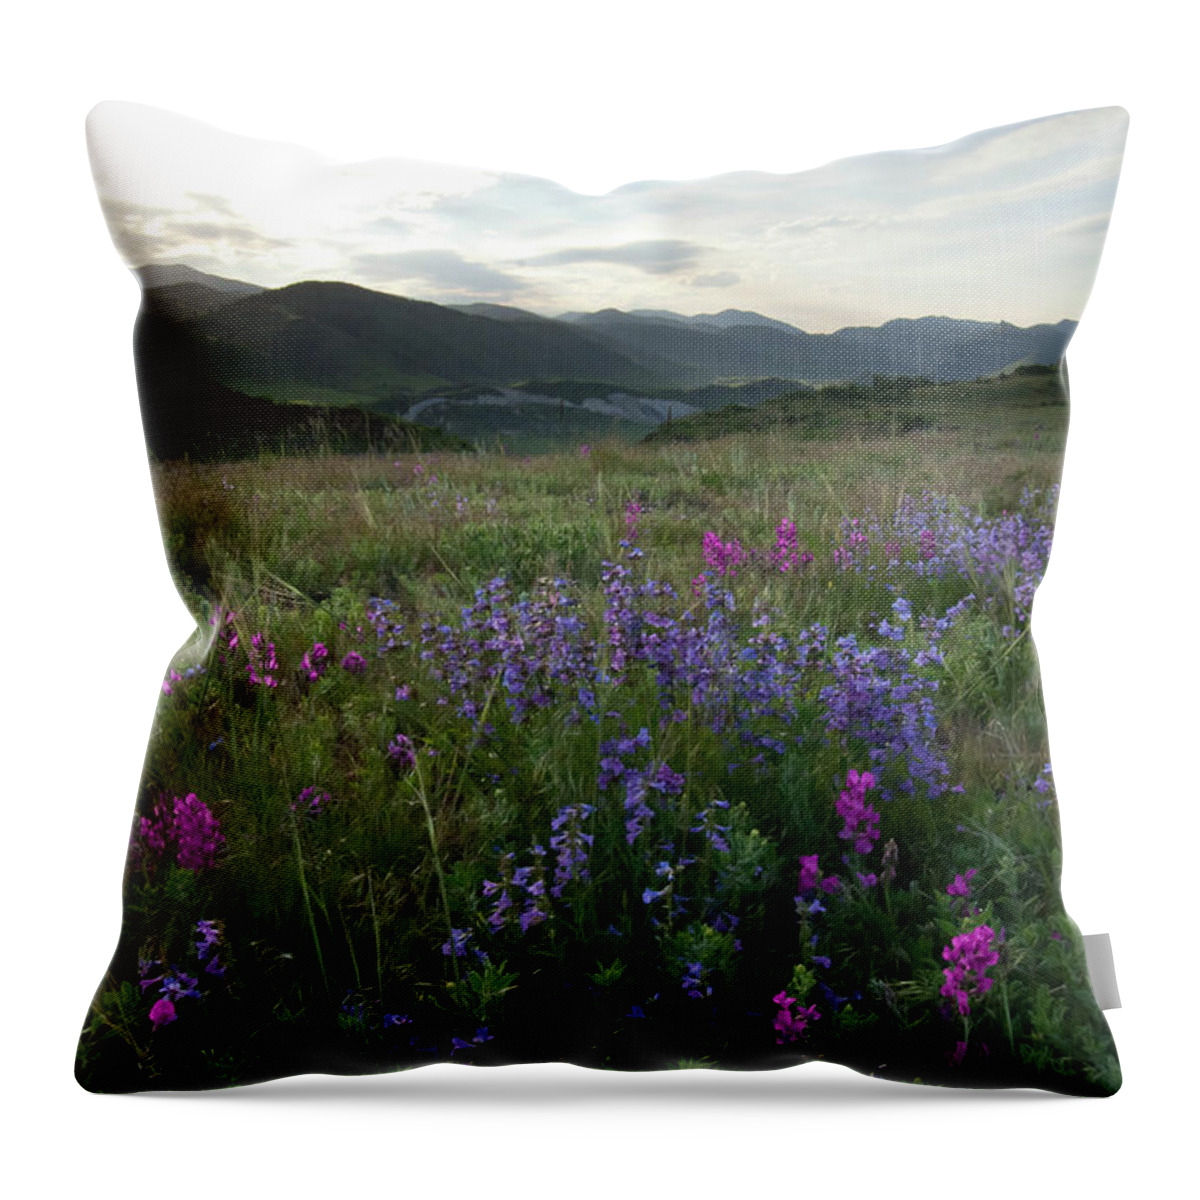 Mesa Throw Pillow featuring the photograph Colorado Evening Mesa Landscape by Cascade Colors